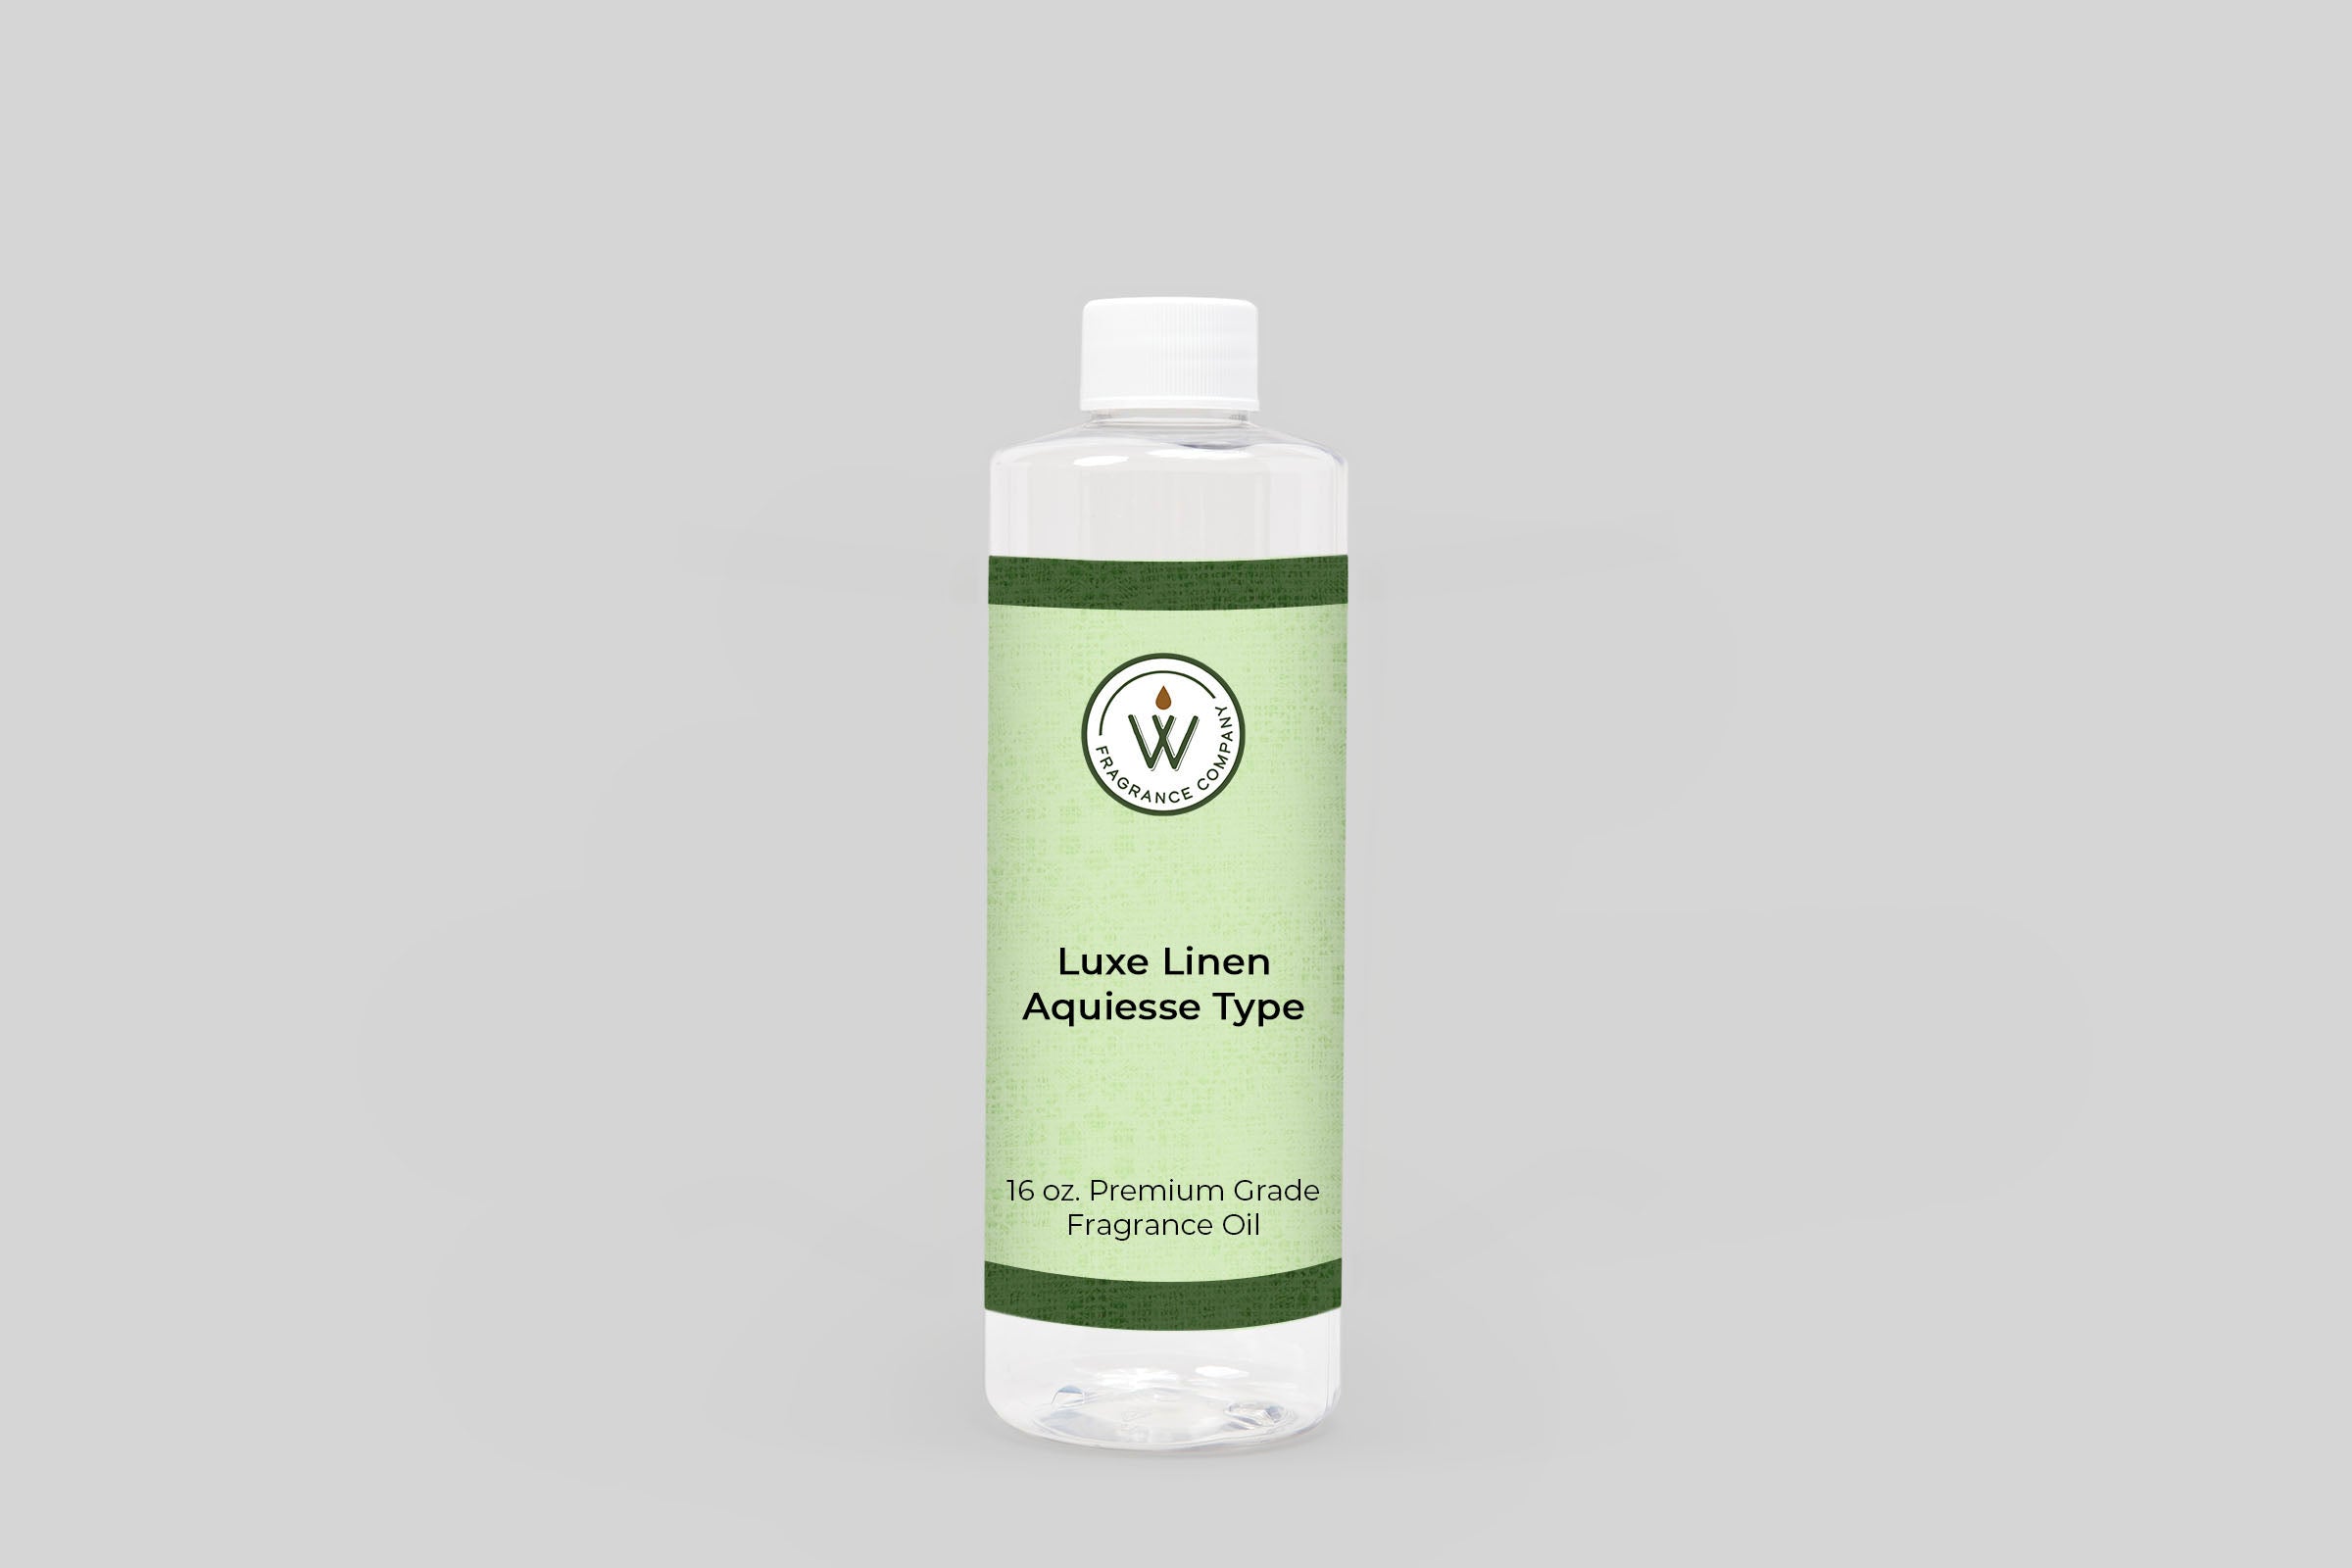 Luxe Linen Aquiesse Type Fragrance Oil